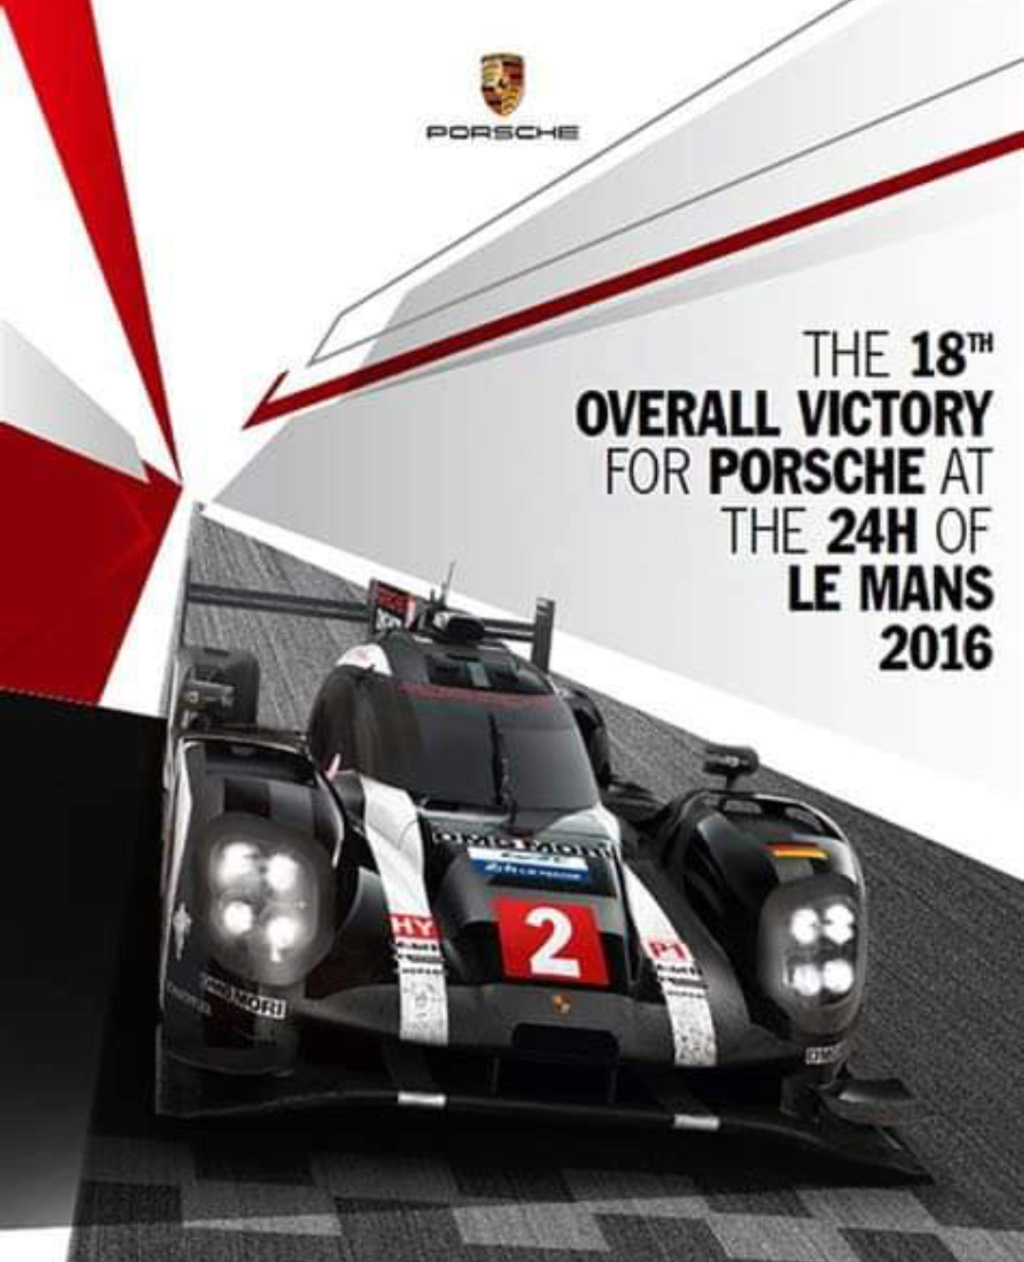 Affiches Porsche dans la course Automobile - Page 5 Img_1354